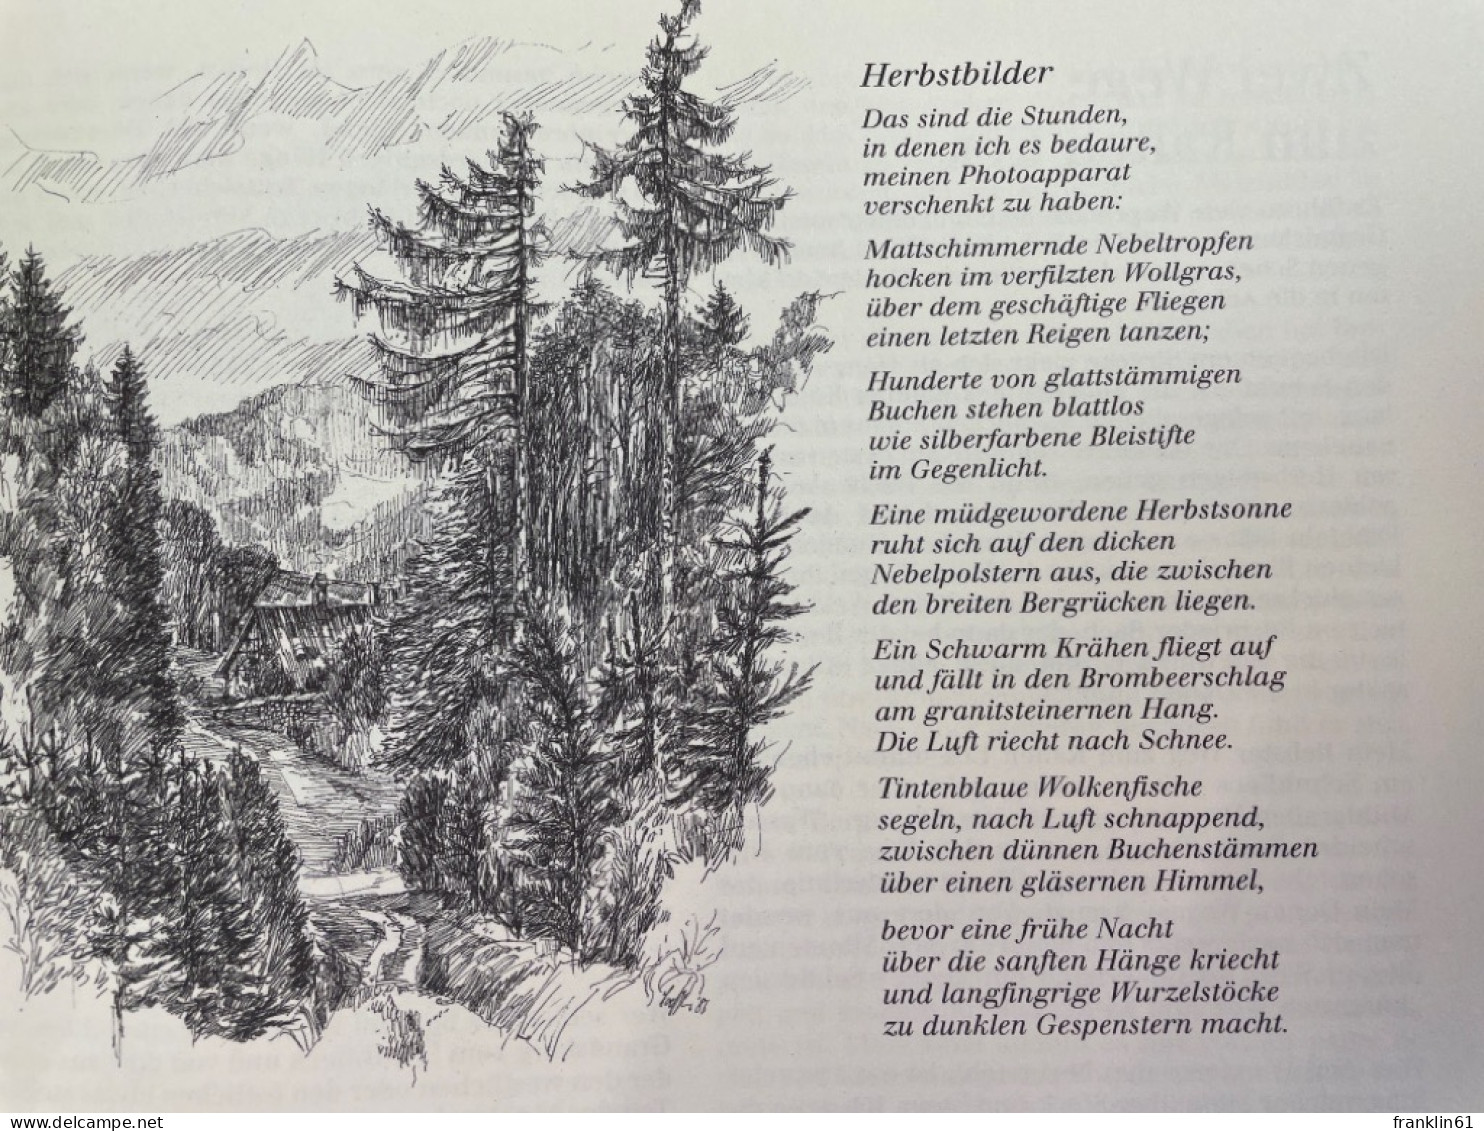 ... waldwärts : Texte und Zeichnungen aus dem Bayerischen Wald.